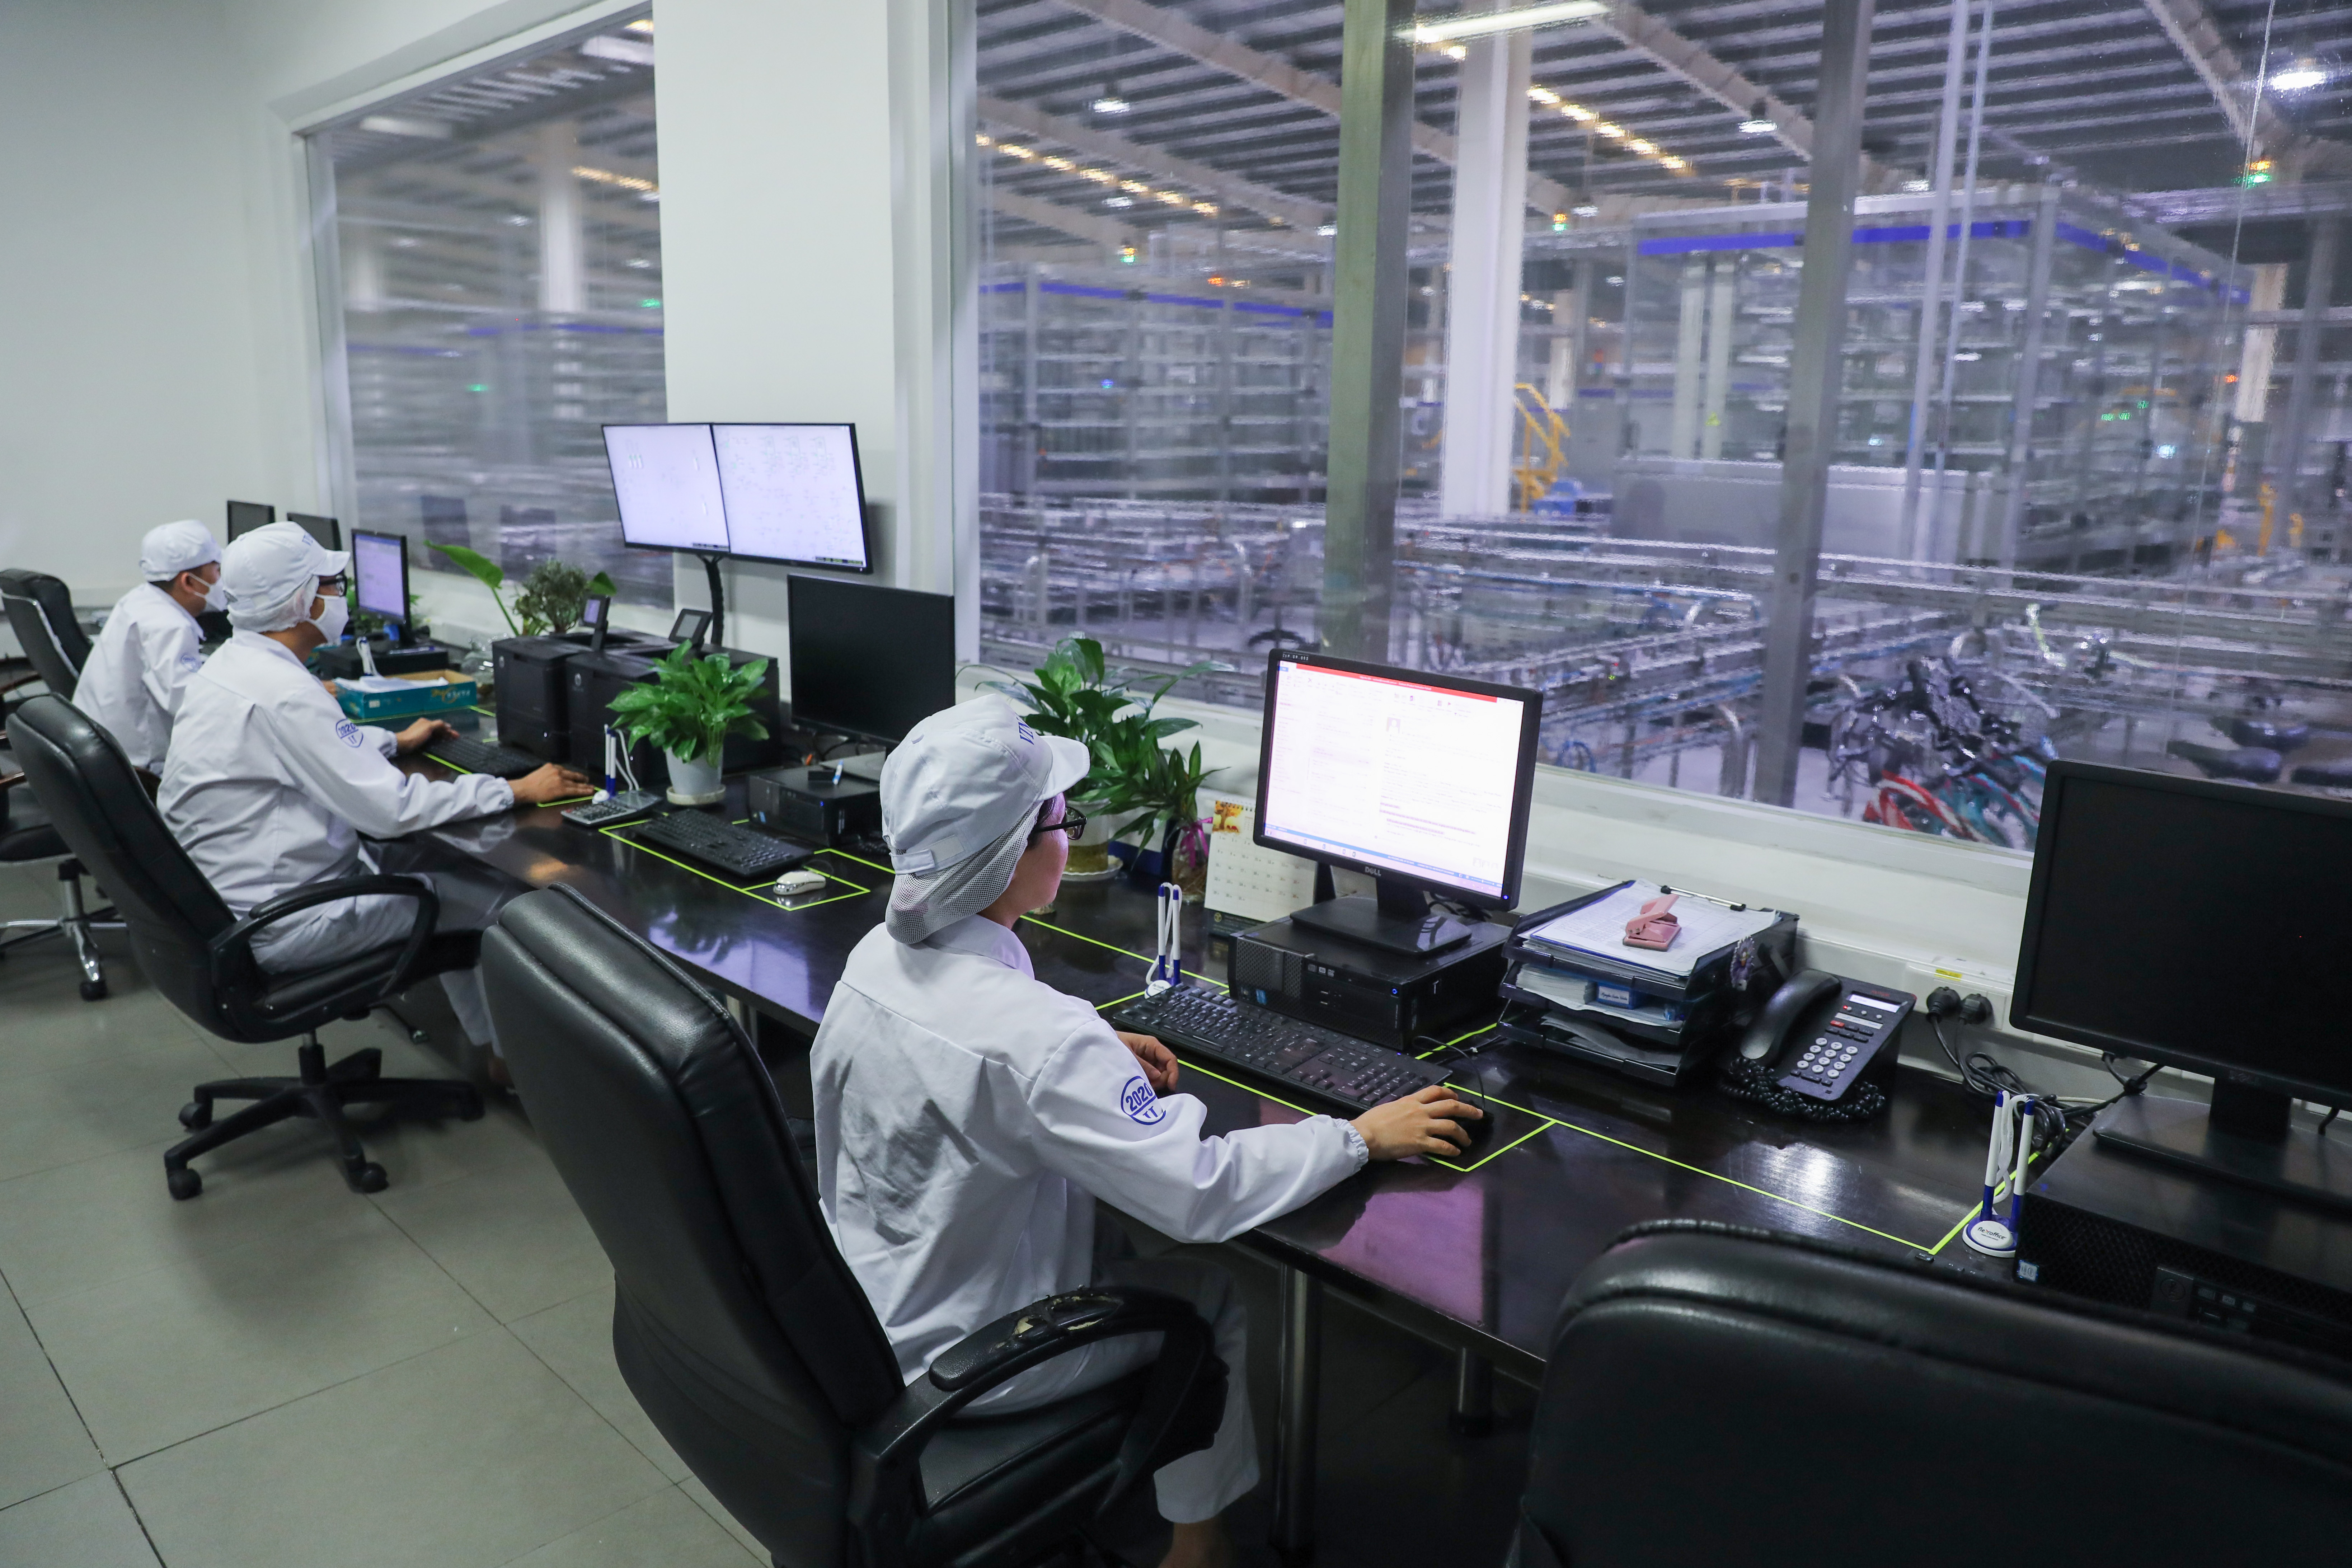 Các nhân viên tại Nhà máy Vinamilk ở Bình Dương đang vận hành dây chuyền sản xuất sữa hiện đại, hoàn toàn tự động hóa qua hệ thống máy tính